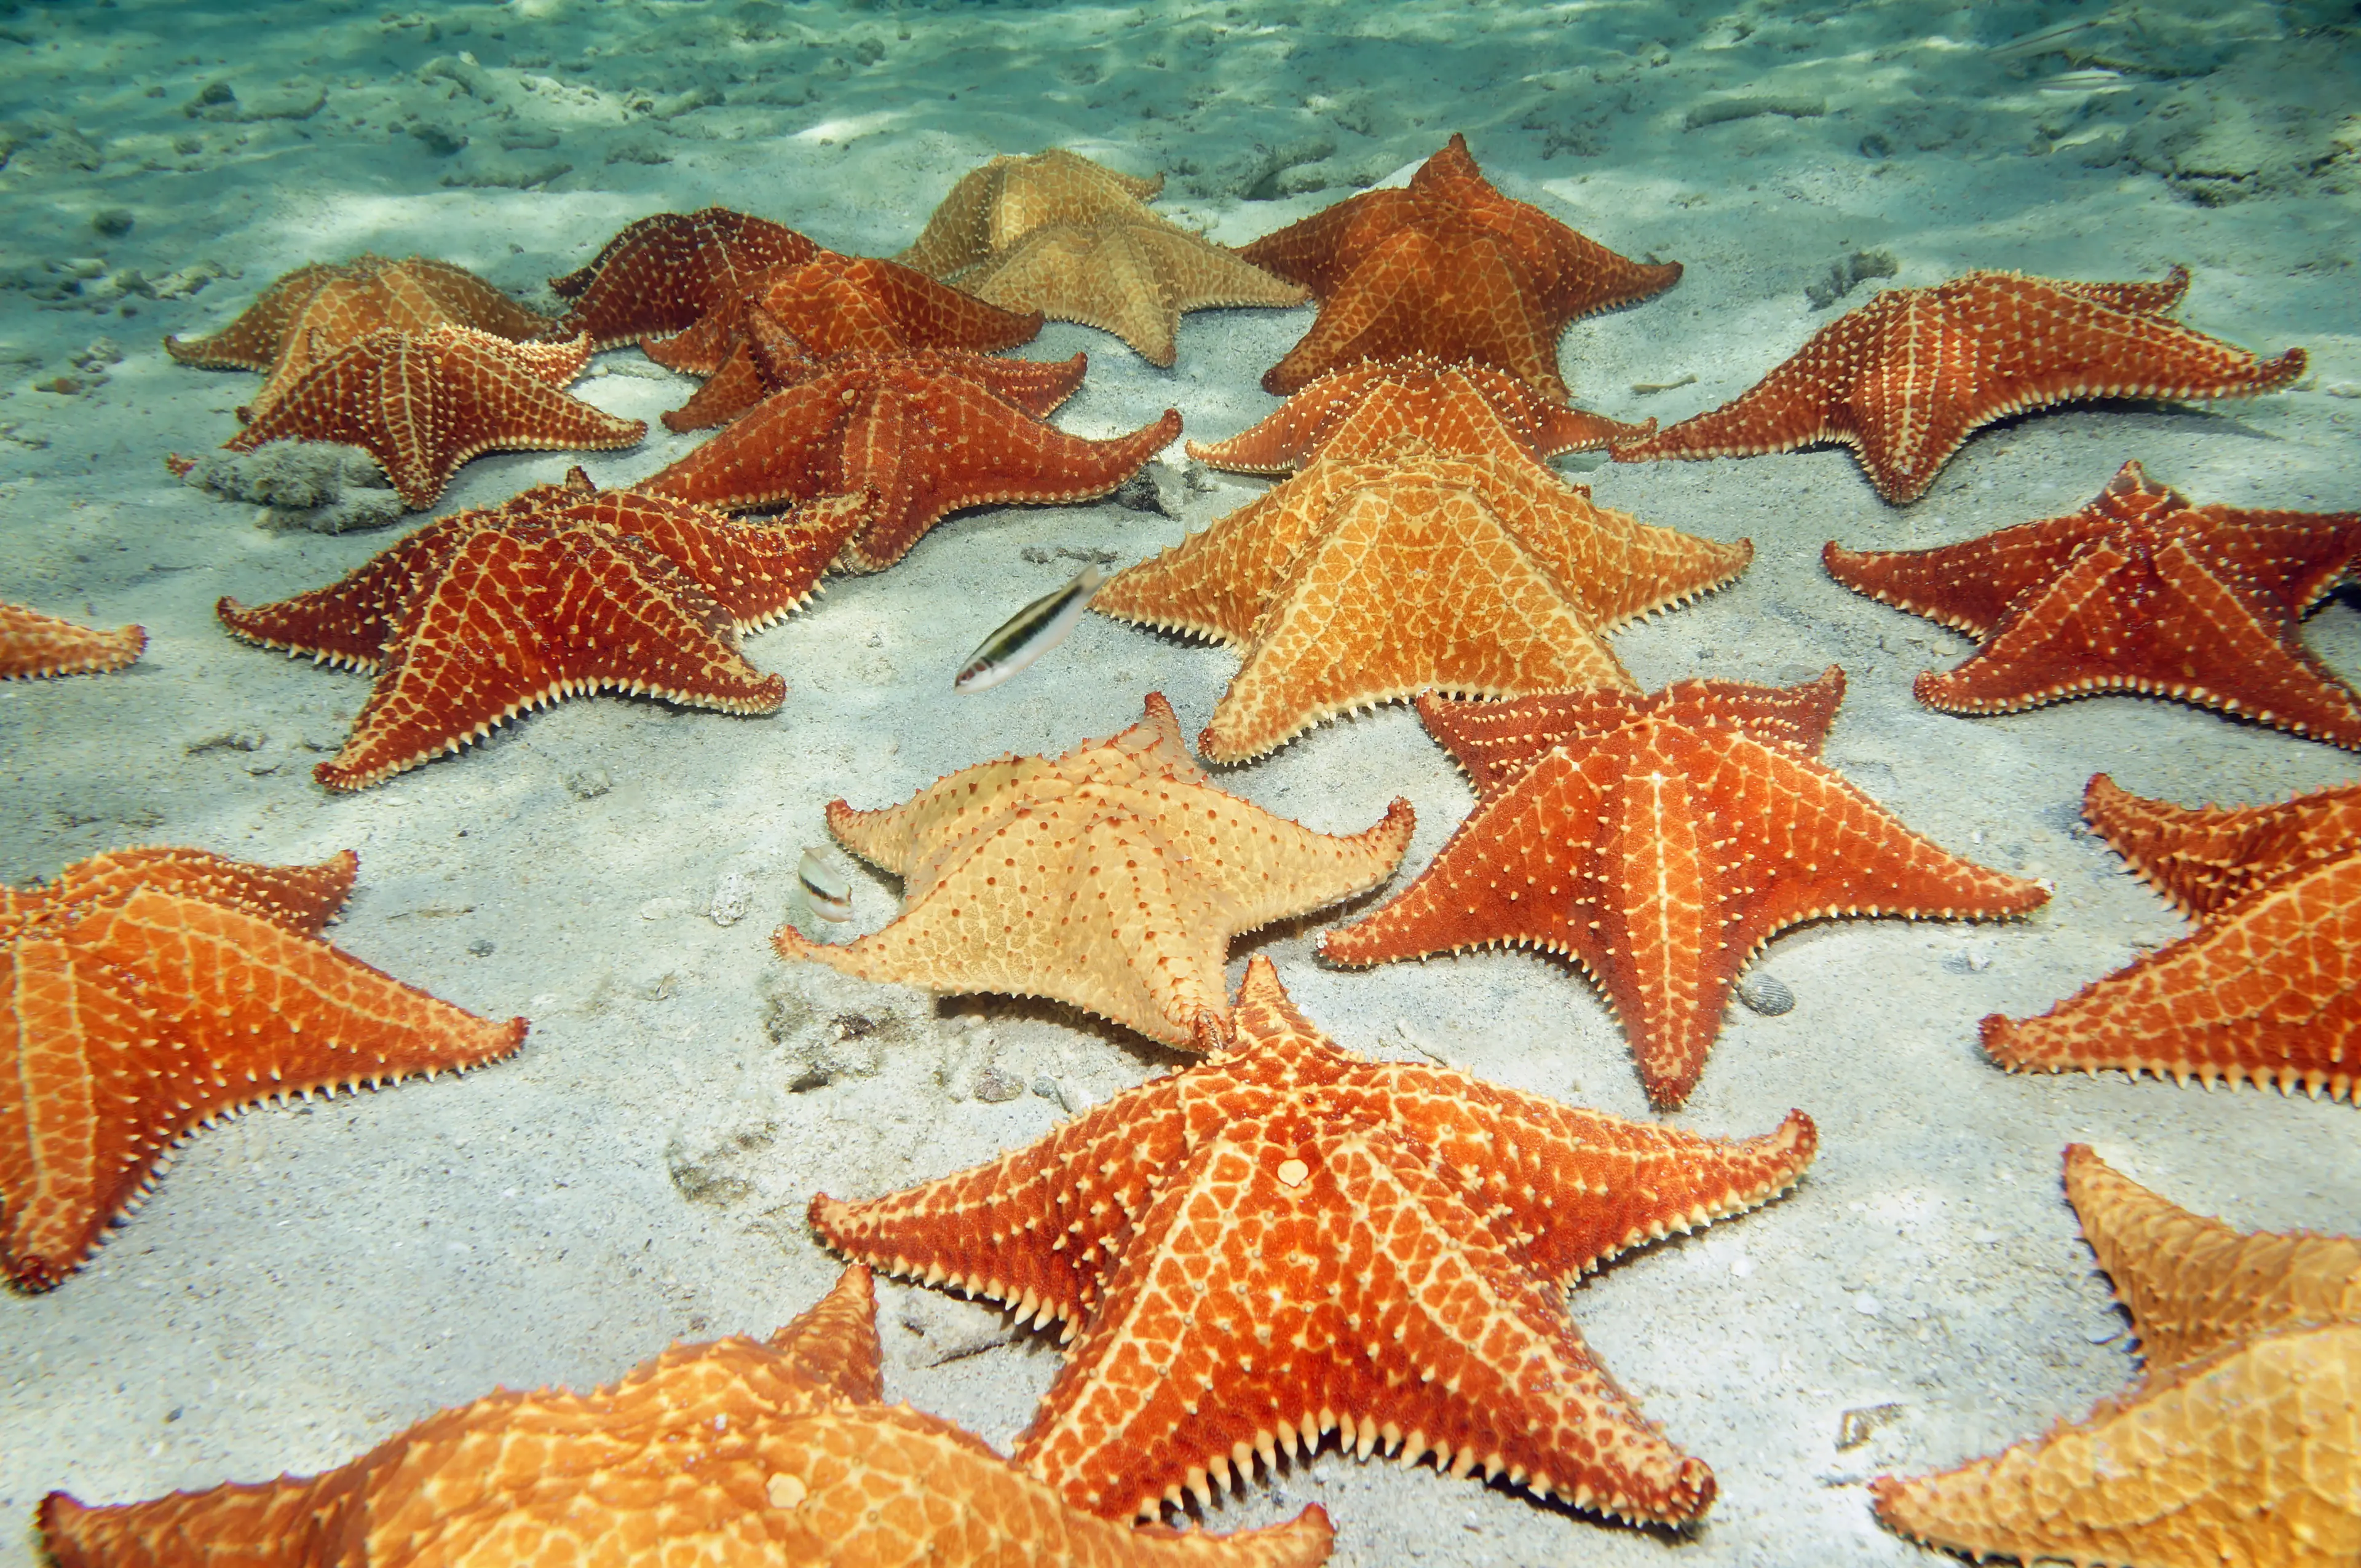 Orange sea stars on sandy ocean floor